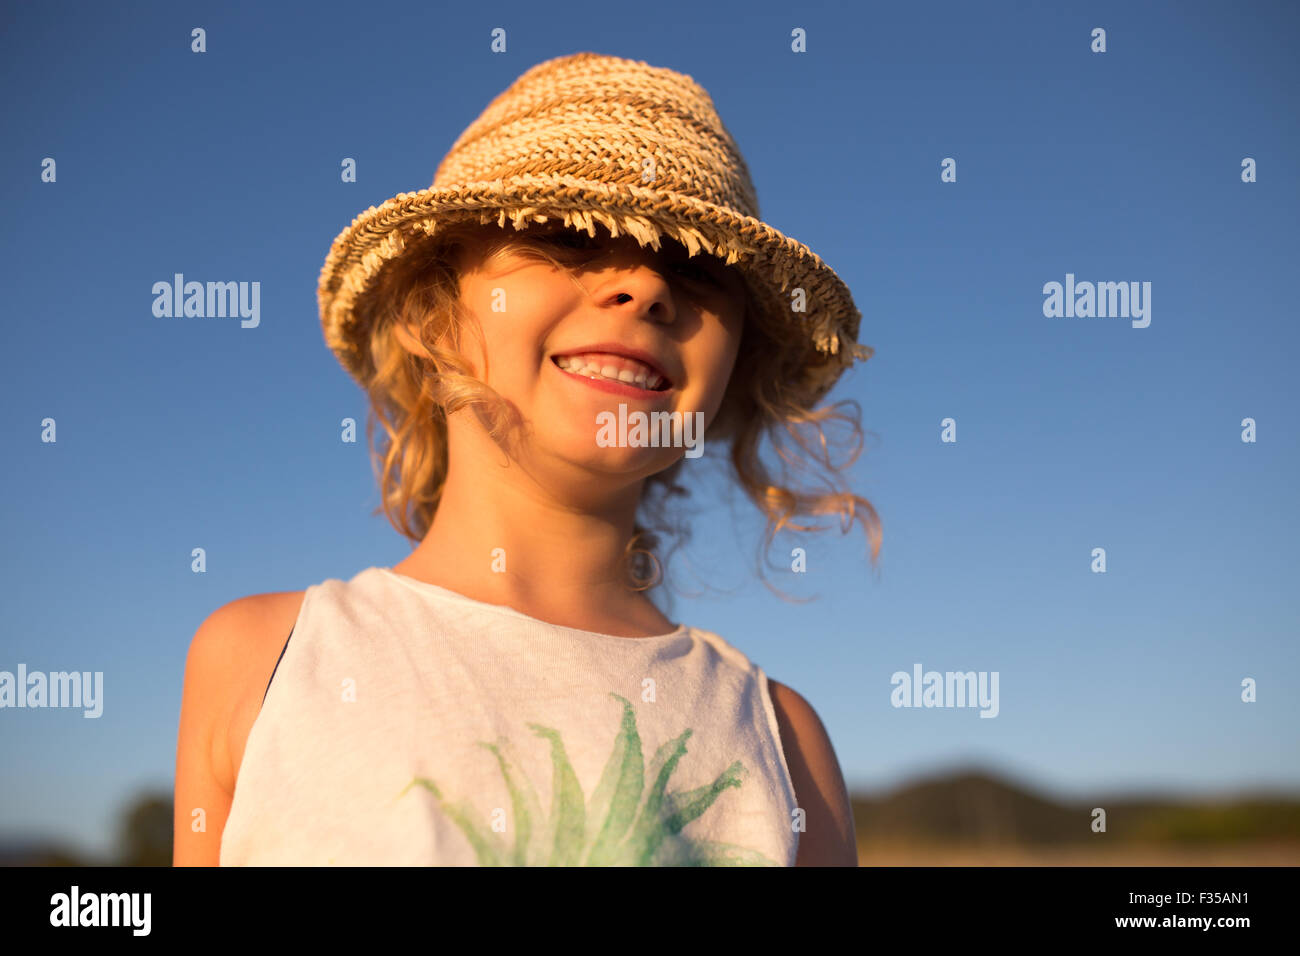 Cute Little Girl emocional retrato al aire libre en la luz cálida del atardecer Foto de stock